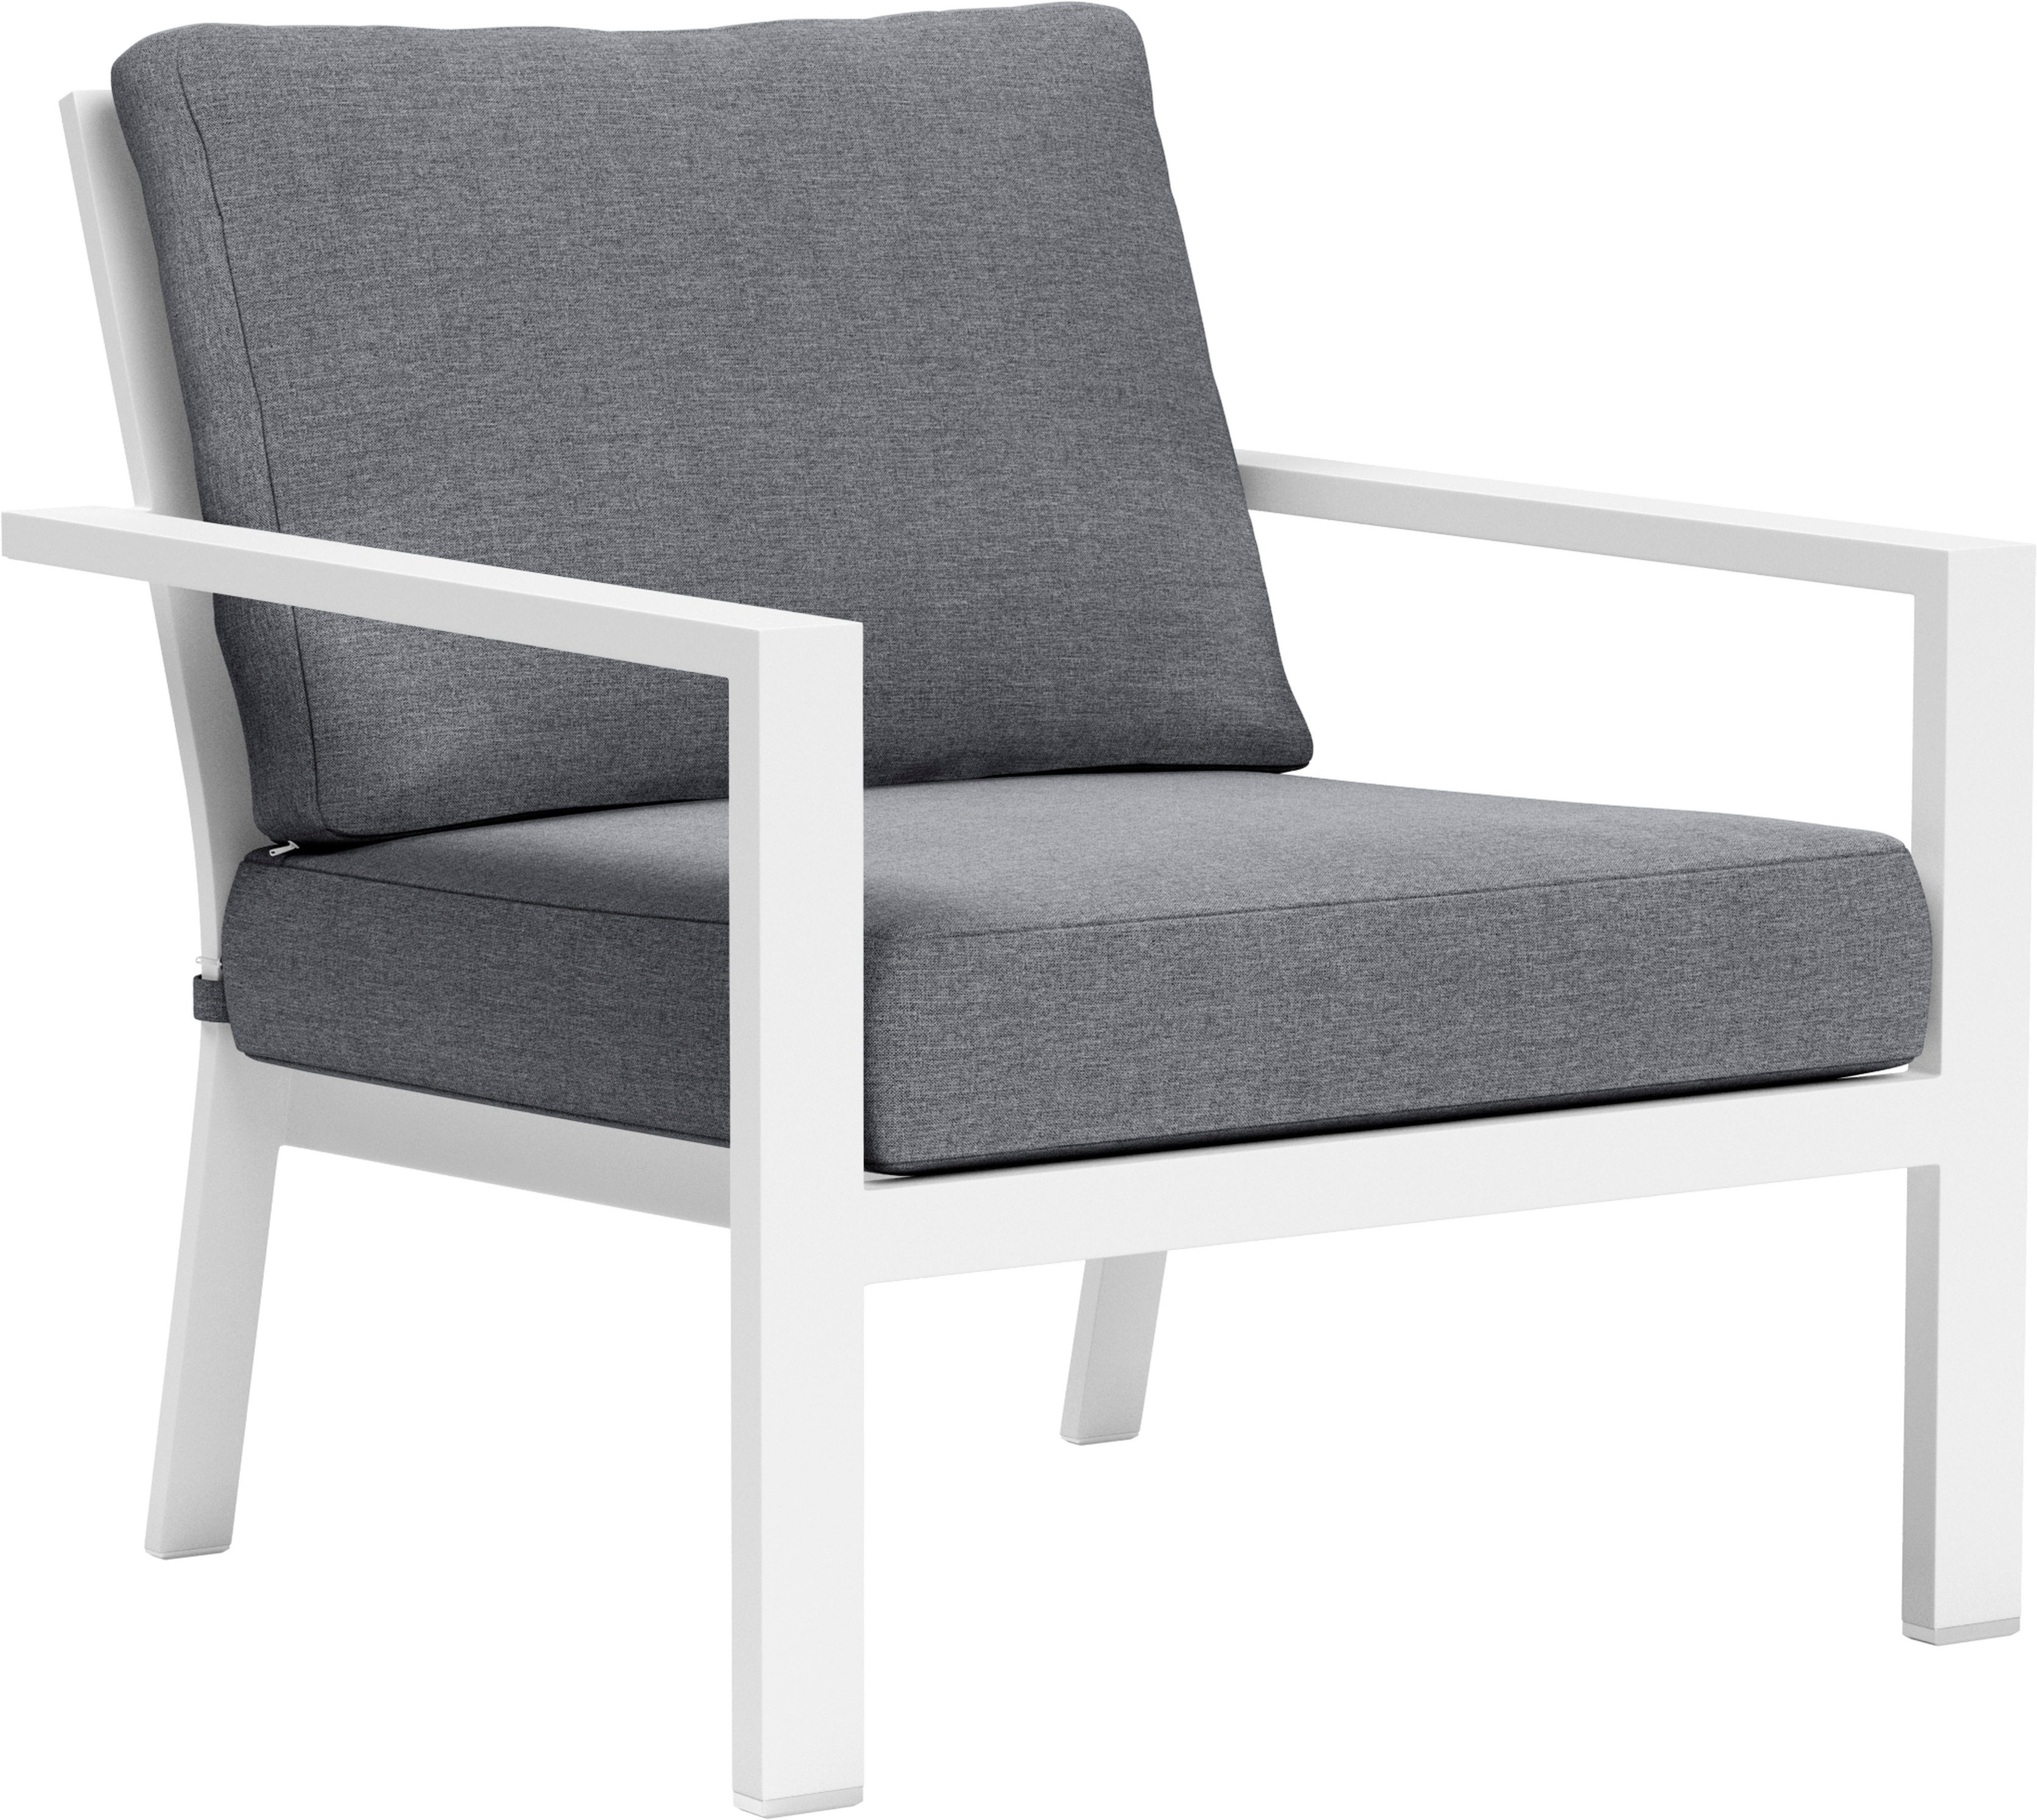 Angle View: Yardbird® - Luna Fixed Arm Chair - Slate